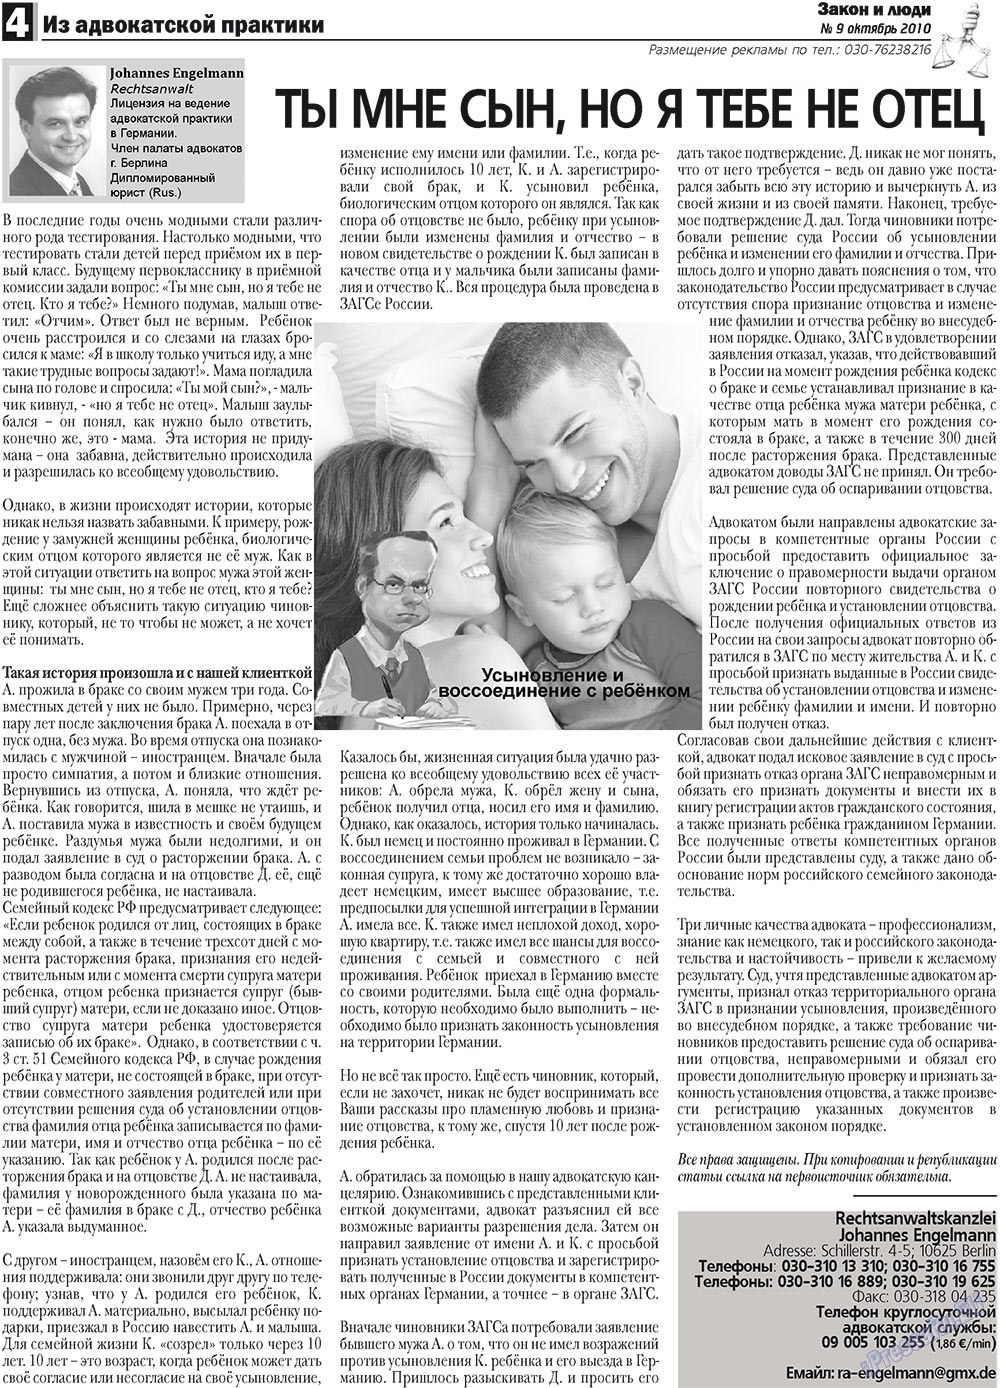 Закон и люди, газета. 2010 №9 стр.4